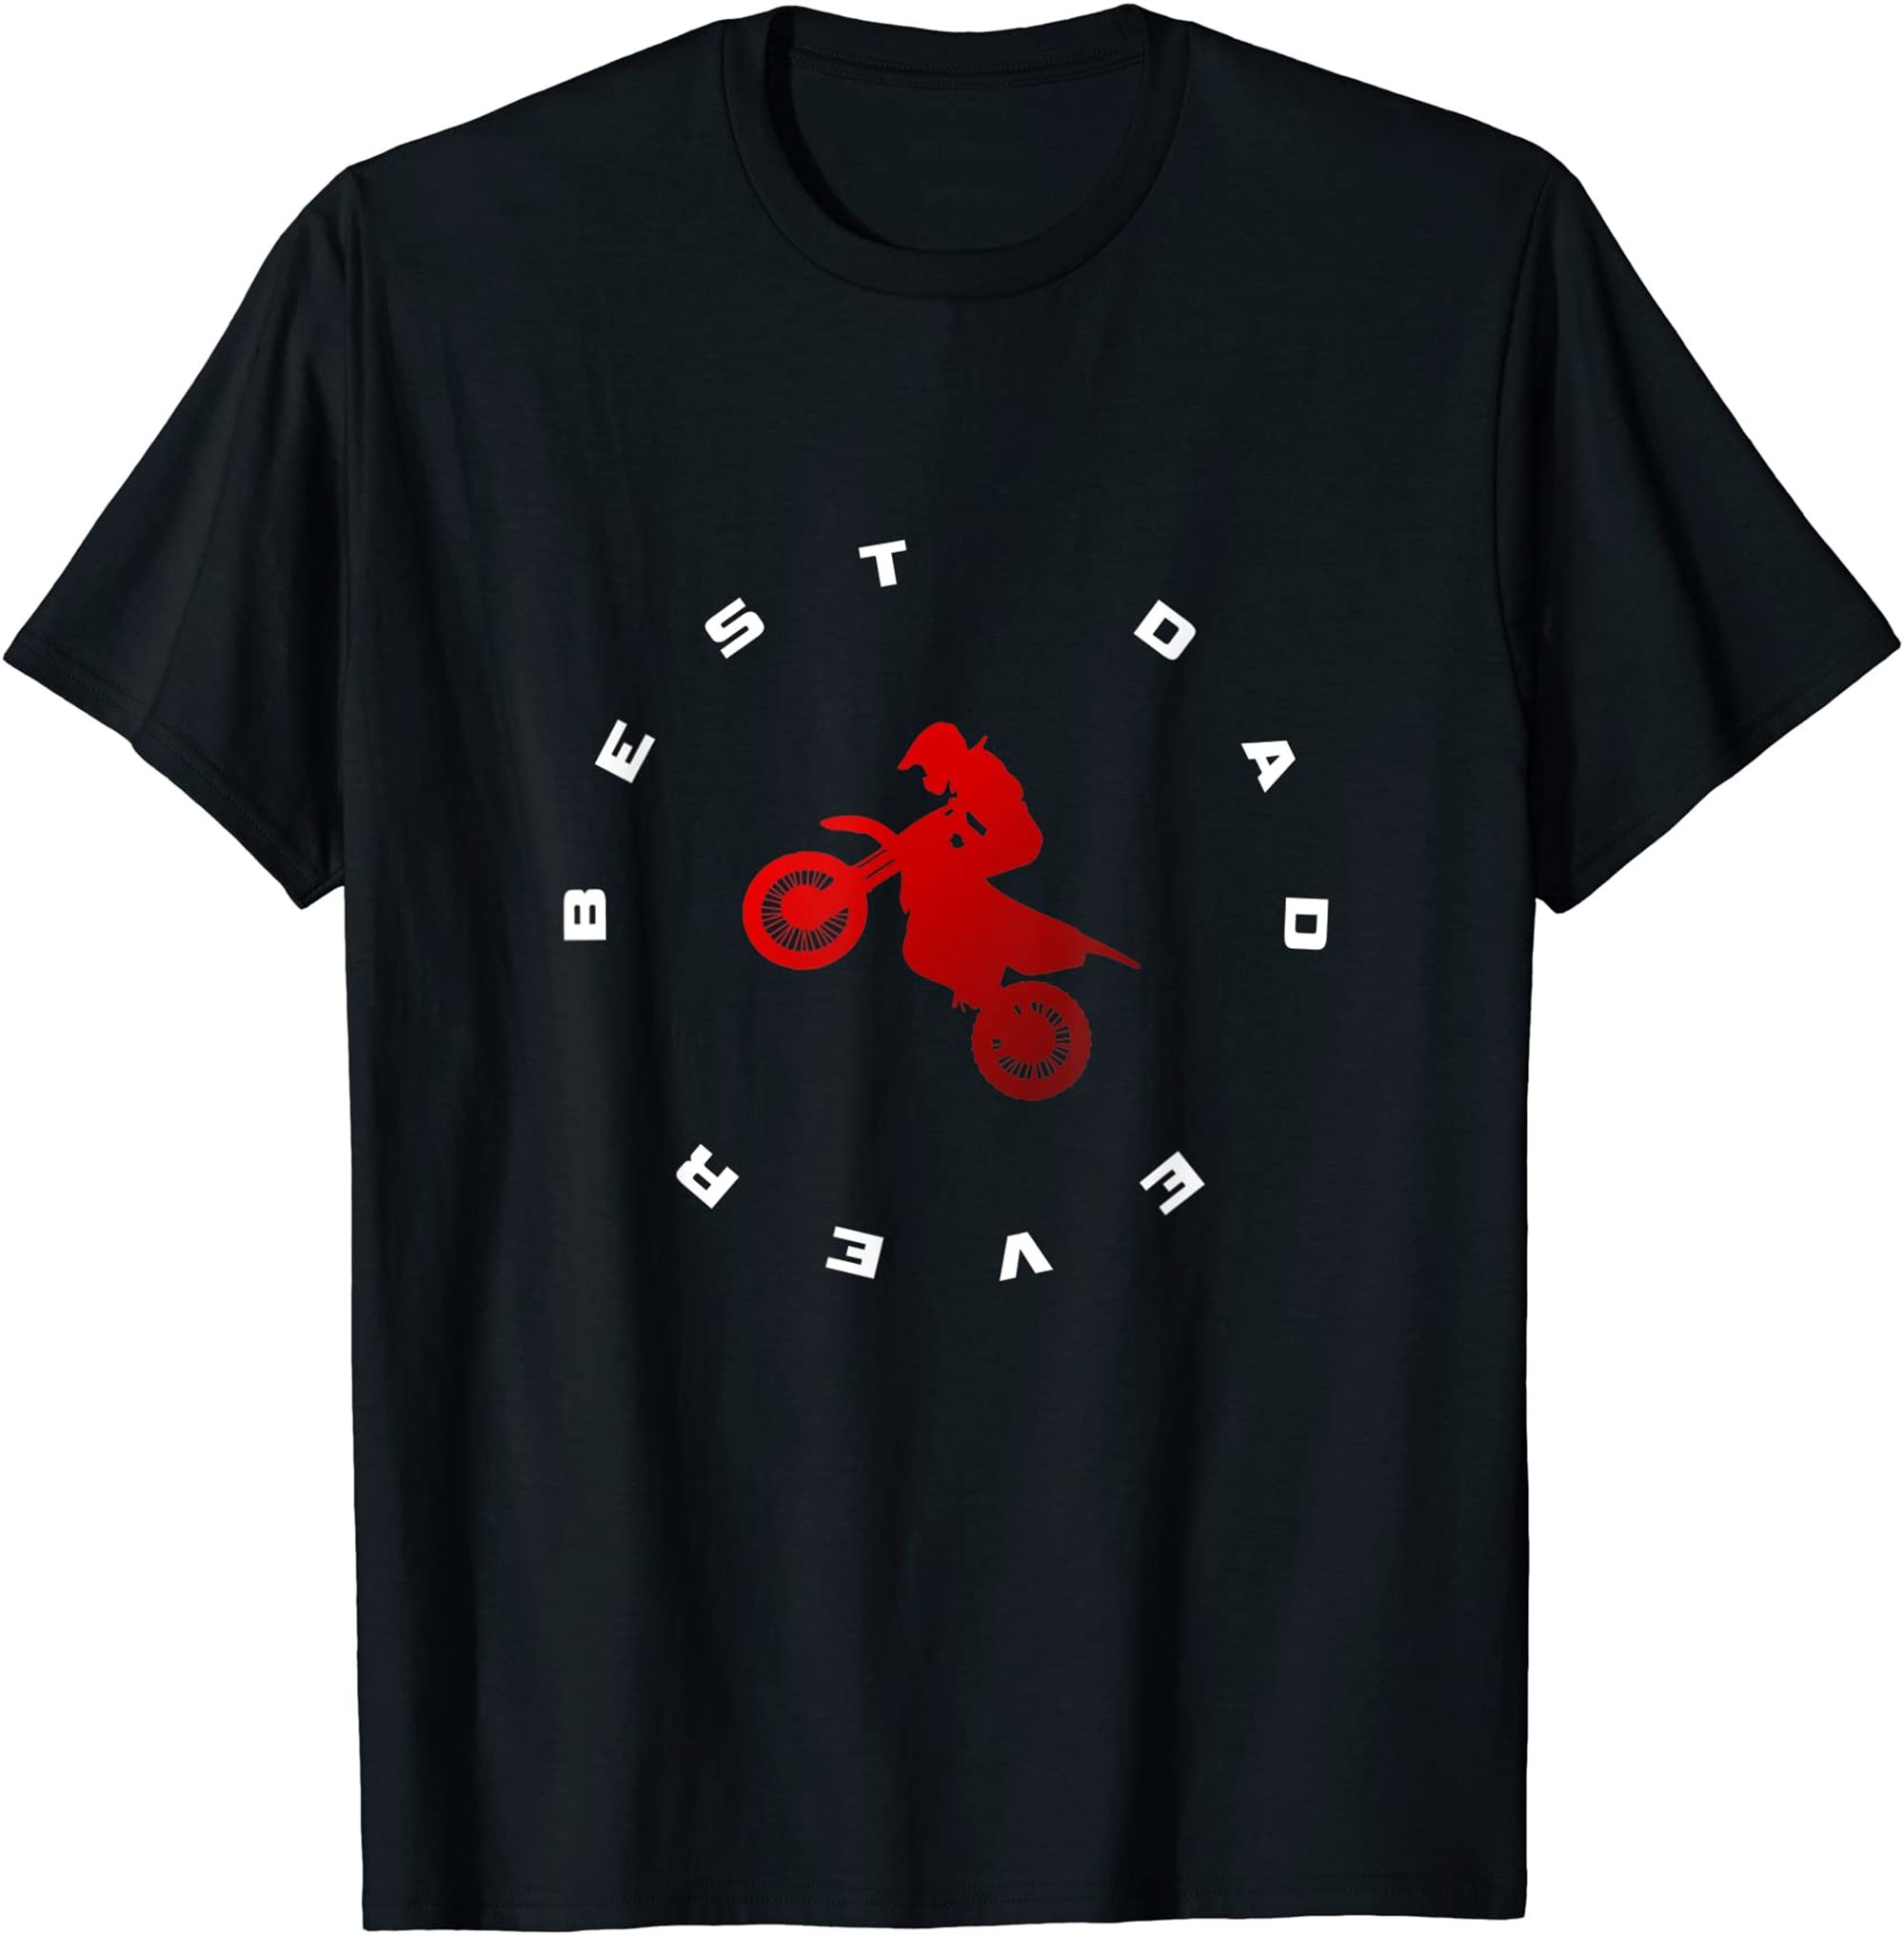 Mens Dirt Bike Motocross Apparel Dirt Bike Motocross T-shirt Size Up To 5xl